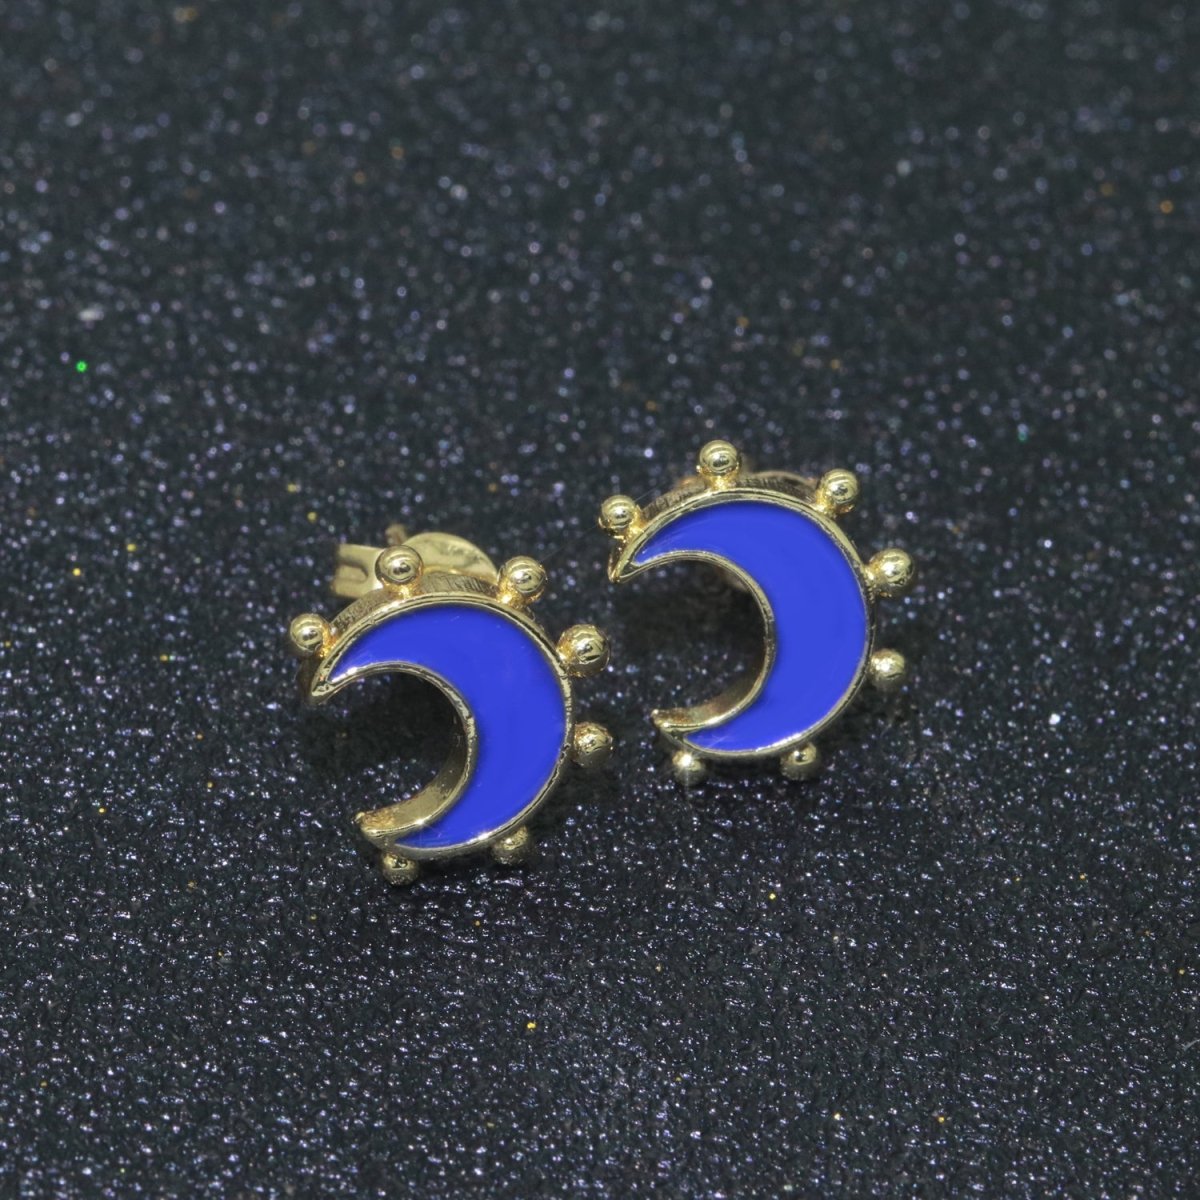 Moon Enamel Stud Earrings Gold Filled Cute Small Celestial Jewelry Hypoallergenic Stud Earrings for Women And Girls T-052~T-057 - DLUXCA